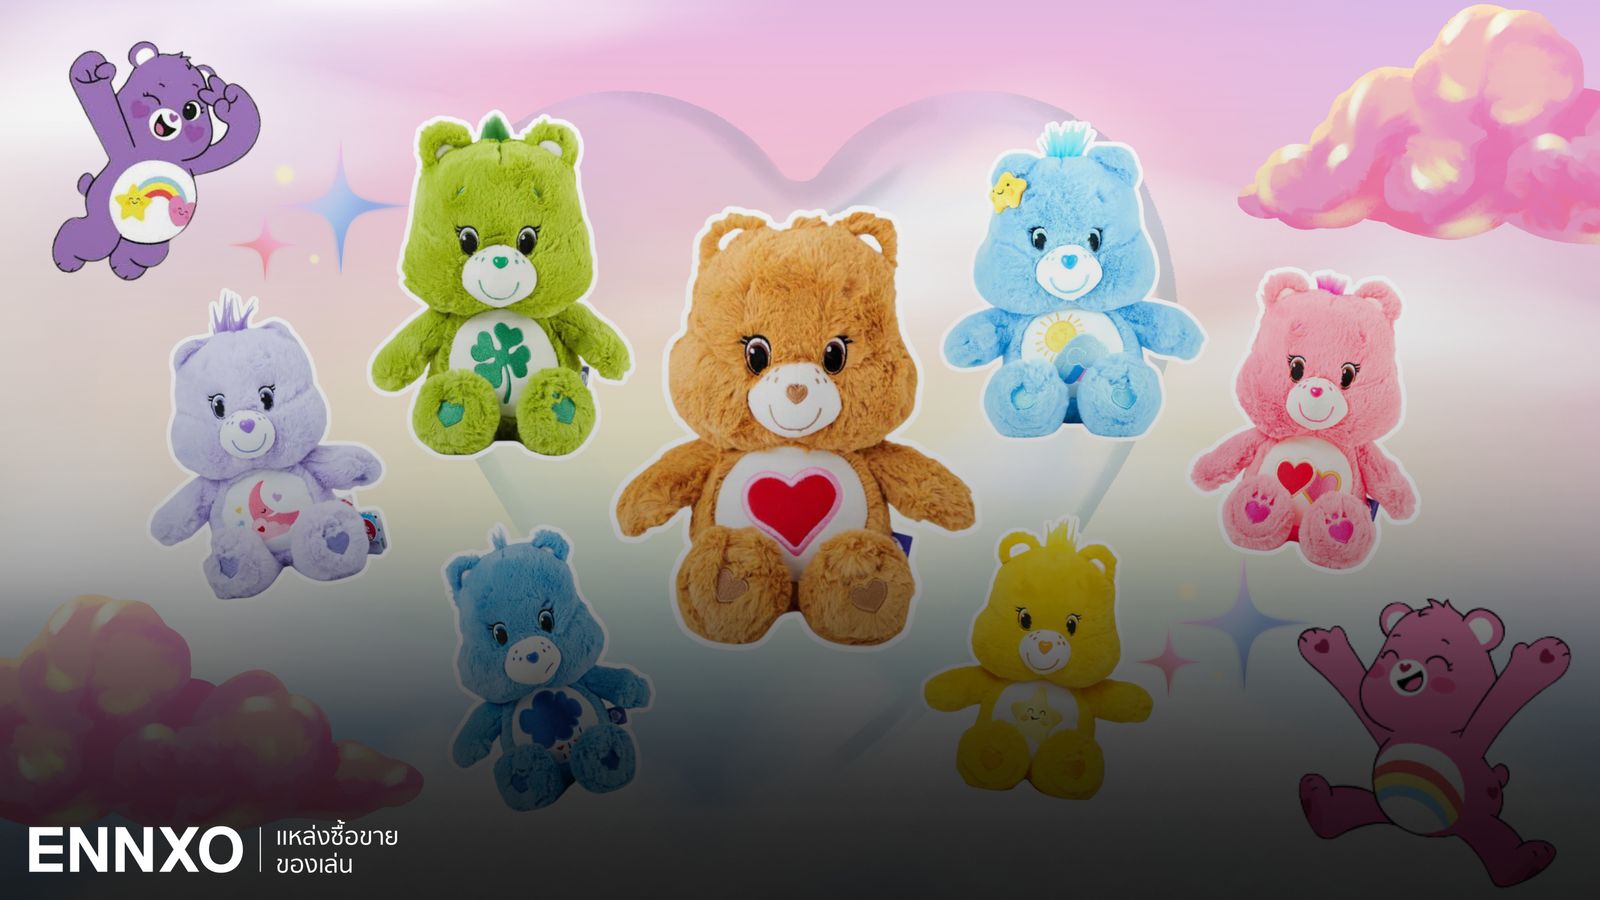 32 Care Bears ชื่อ นิสัย ความหมายตุ๊กตาหมีแคร์แบร์แต่ละสีทั้งหมด